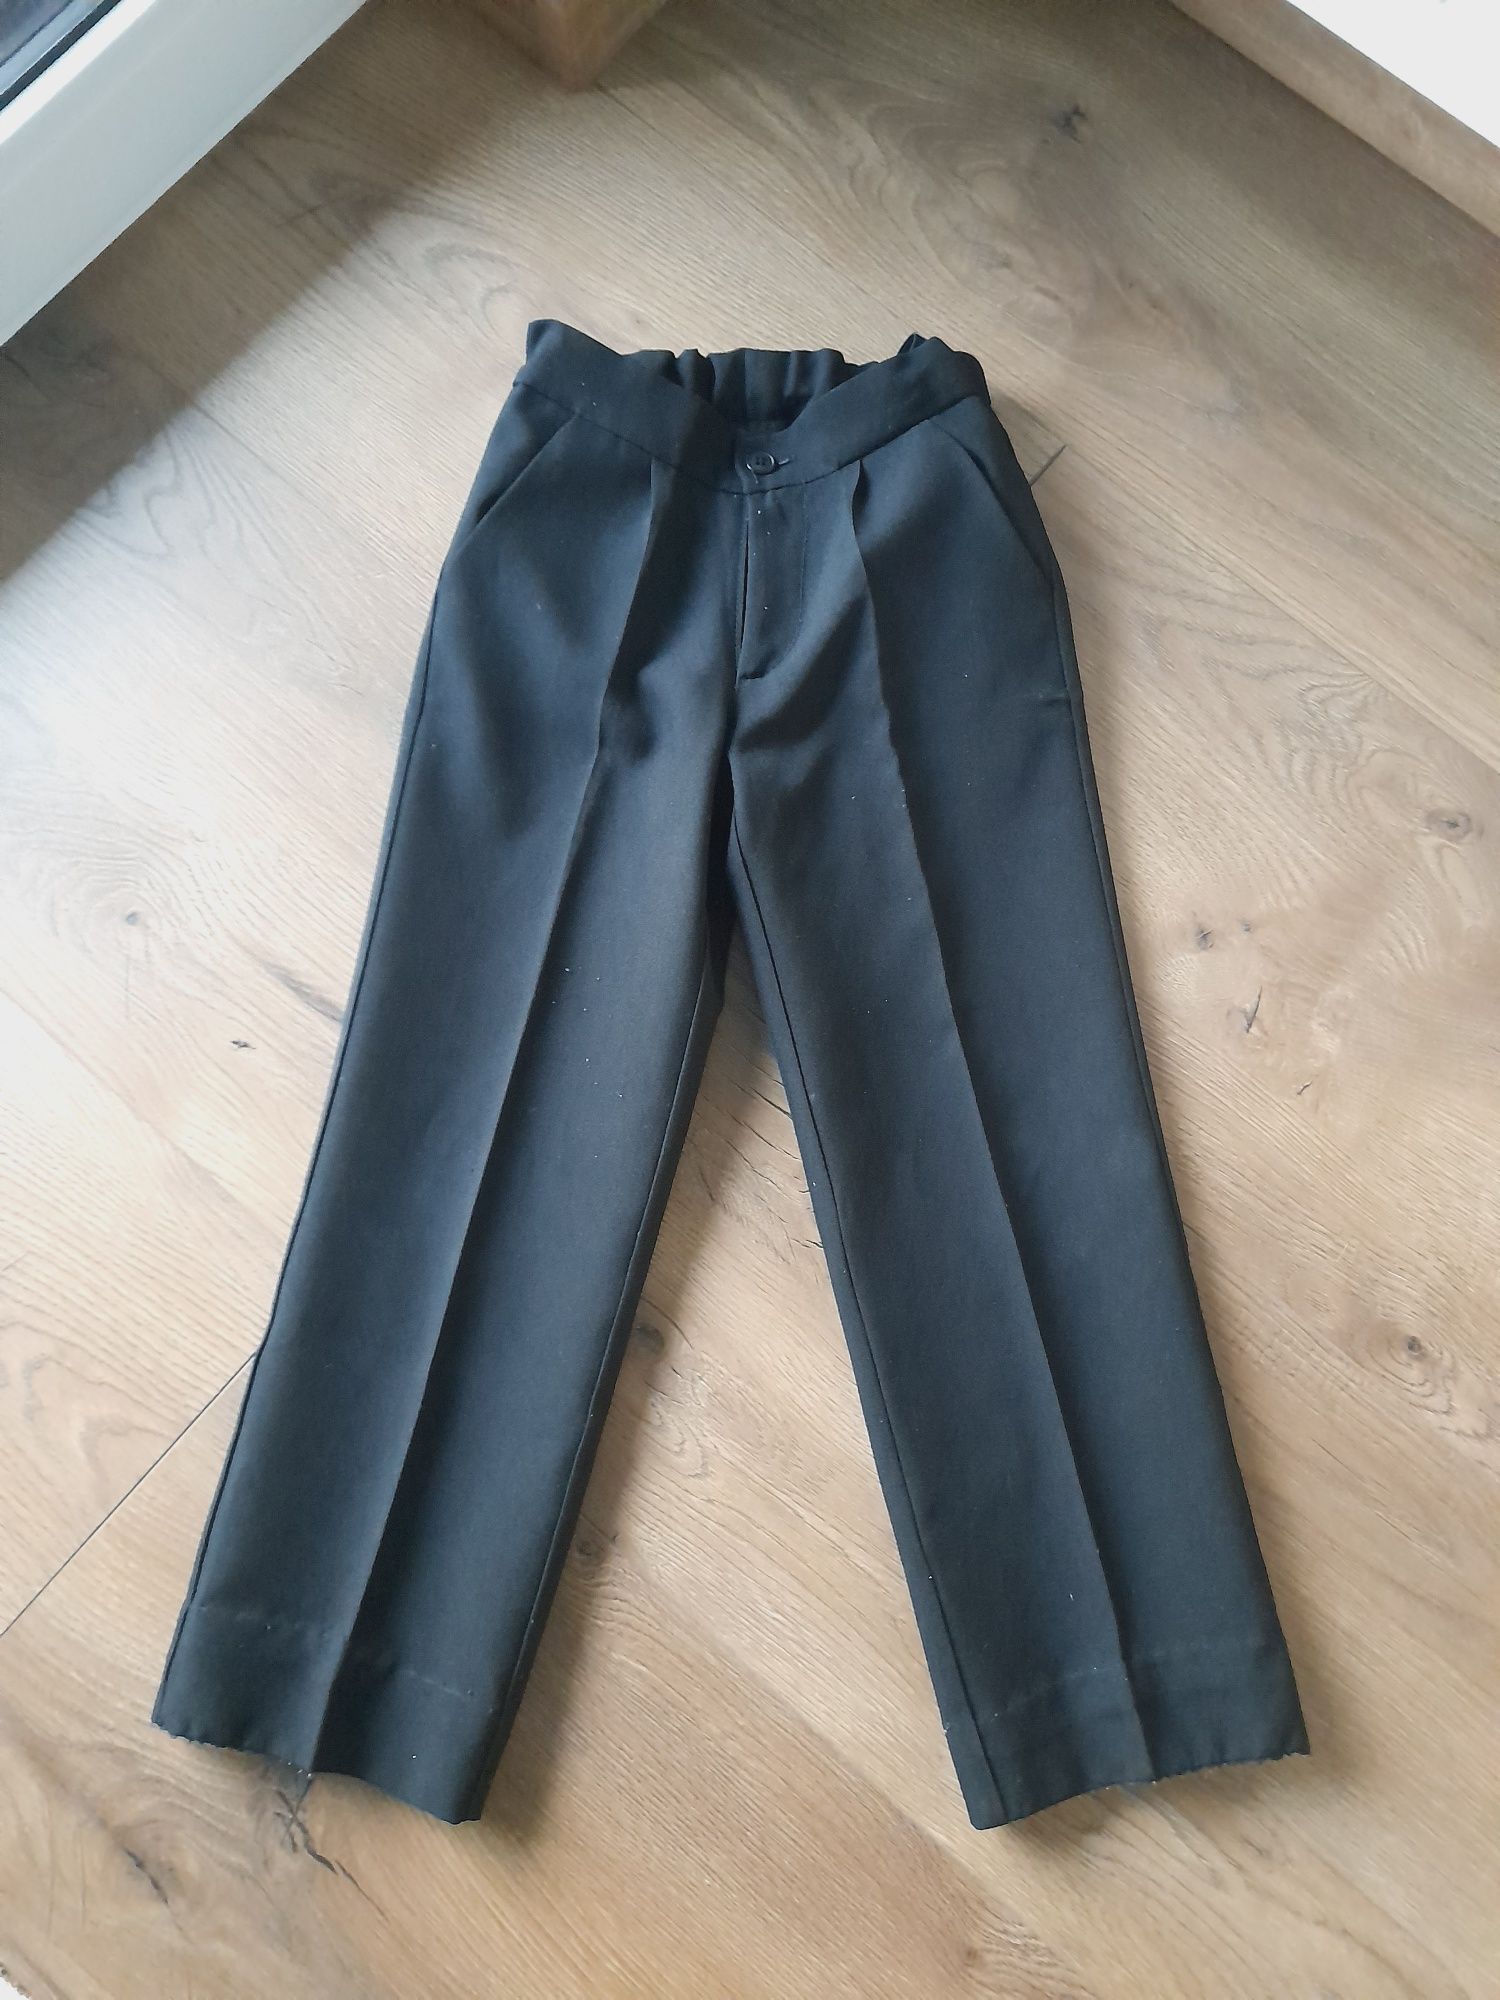 Spodnie czarne dla chłopca rozmiar 116